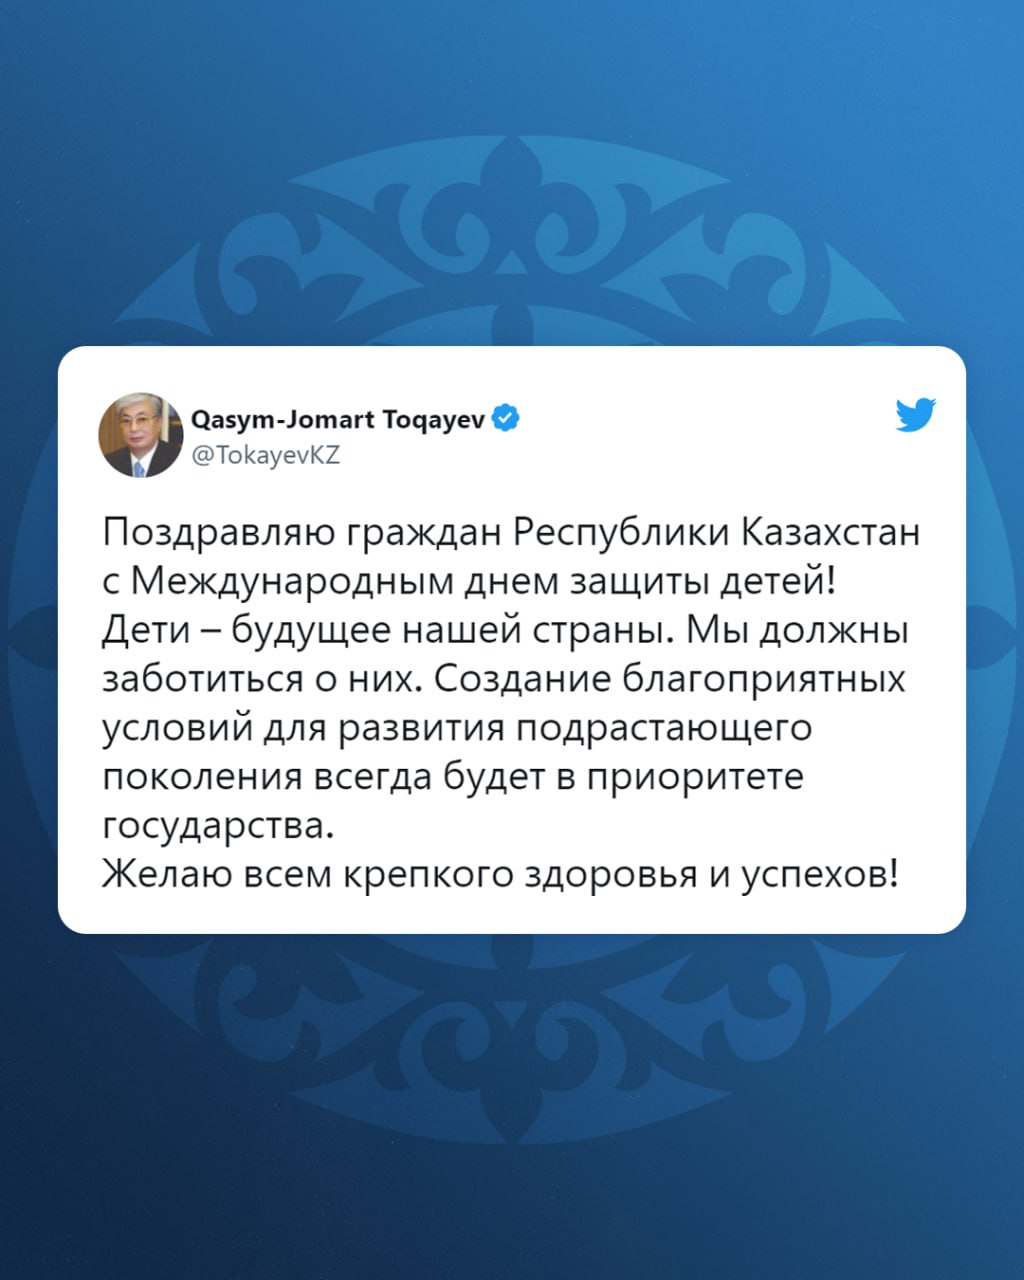 Глава государства Касым-Жомарт Токаев поздравил на своей официальной странице в Twitter с 1 июня – Международным днем защиты детей